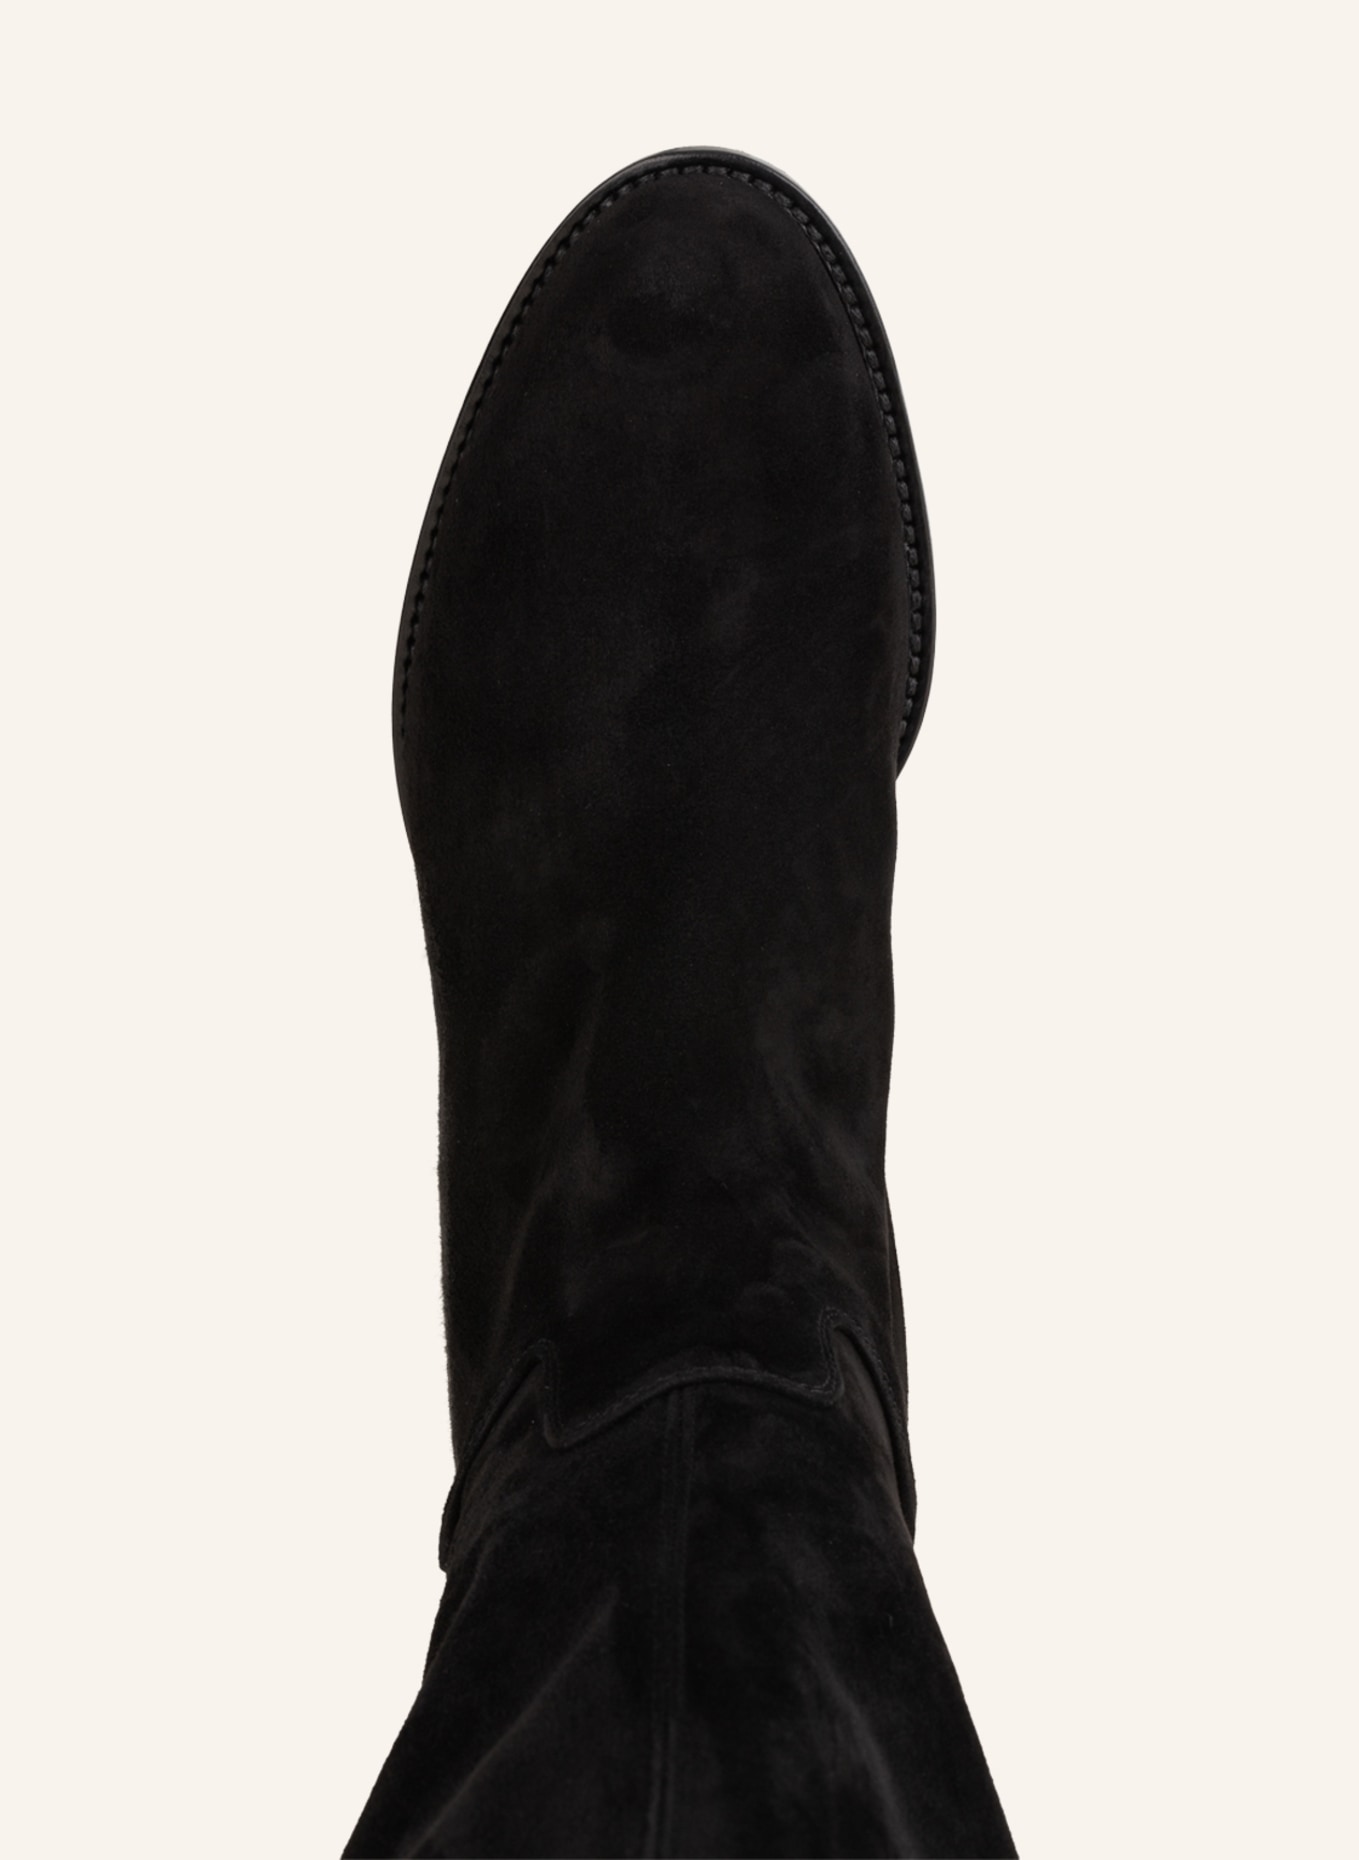 UNÜTZER Boots, Color: BLACK (Image 5)